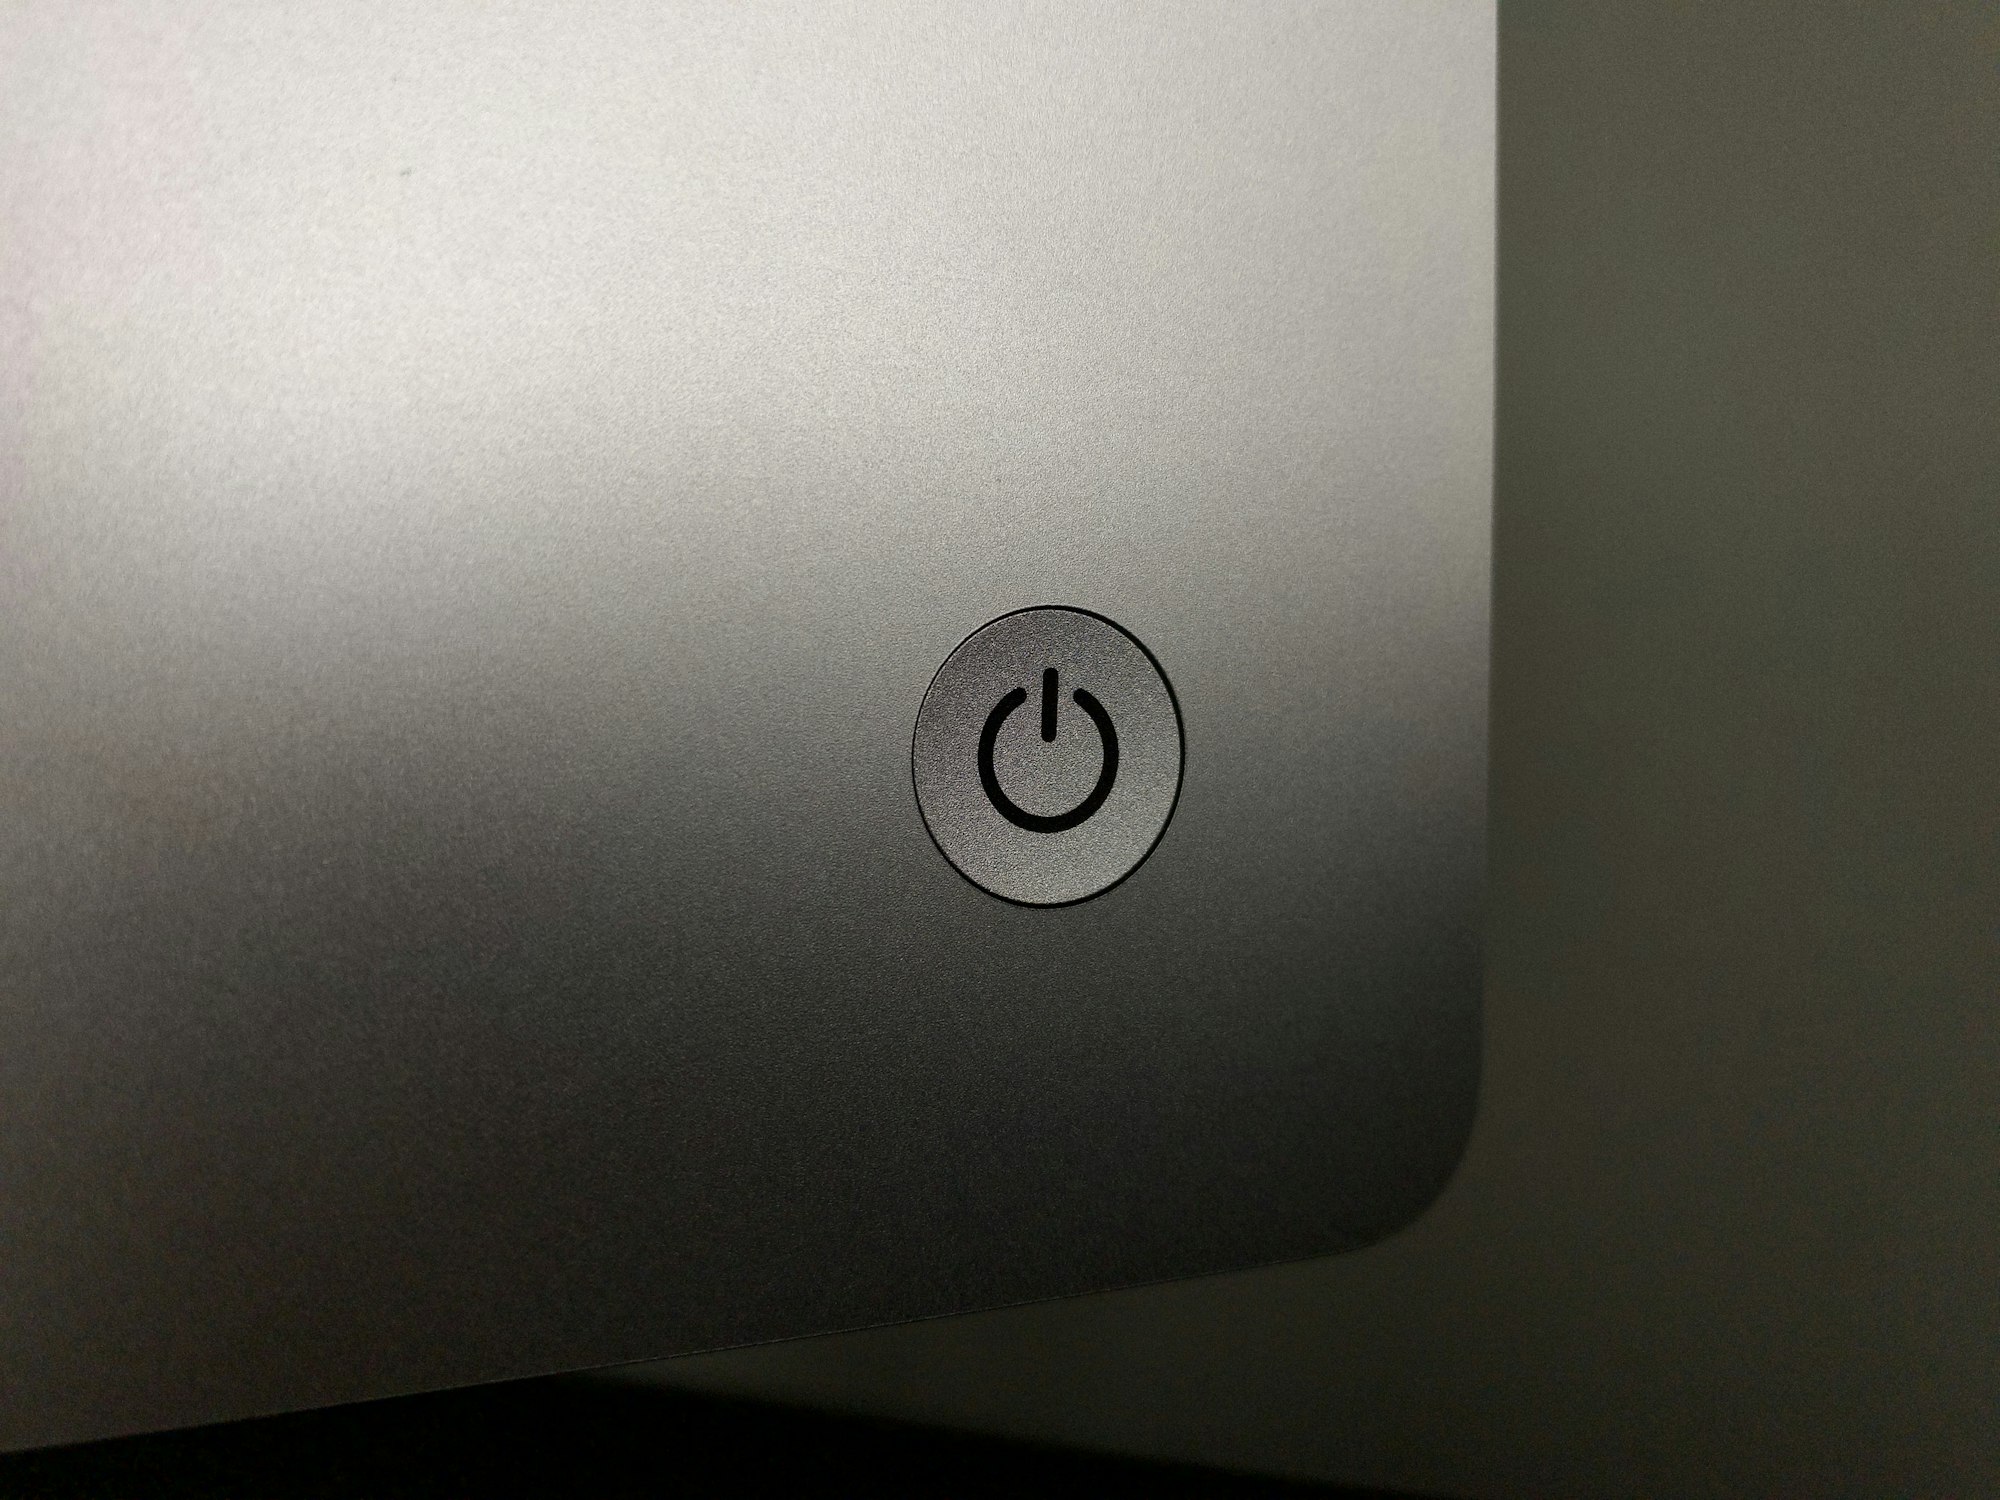 Power button silver M1 iMac. 